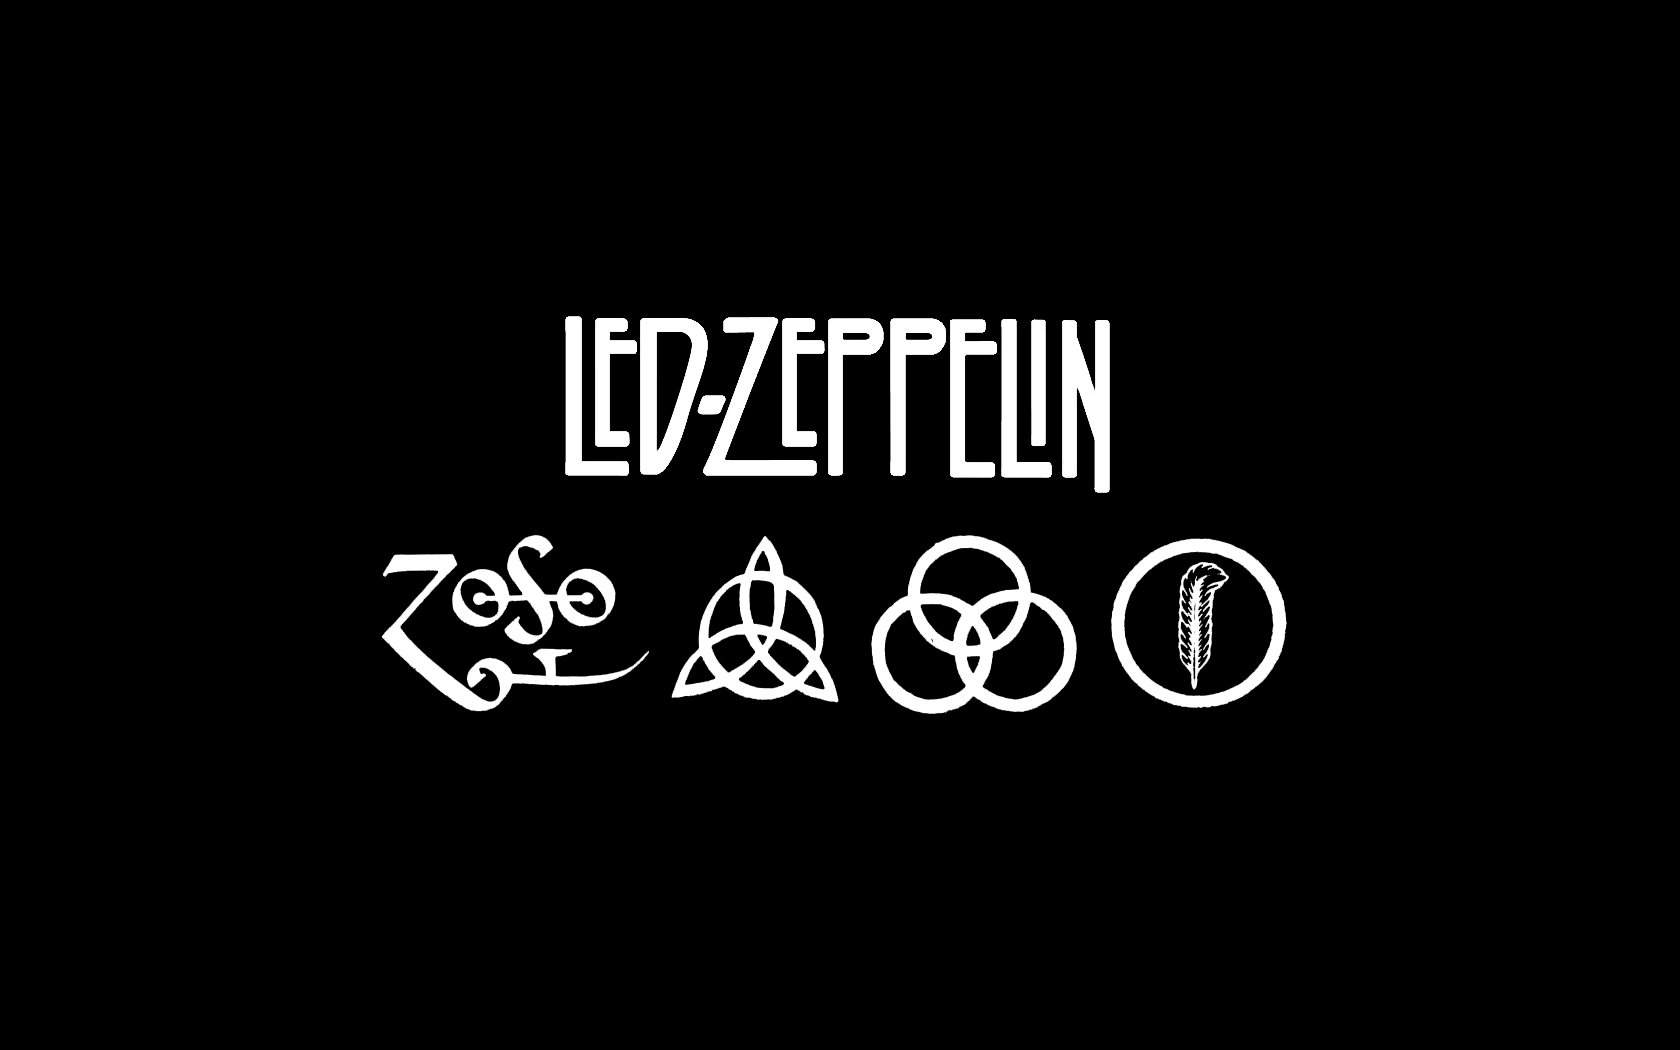 Led Zeppelin Wallpaper Hd - KibrisPDR